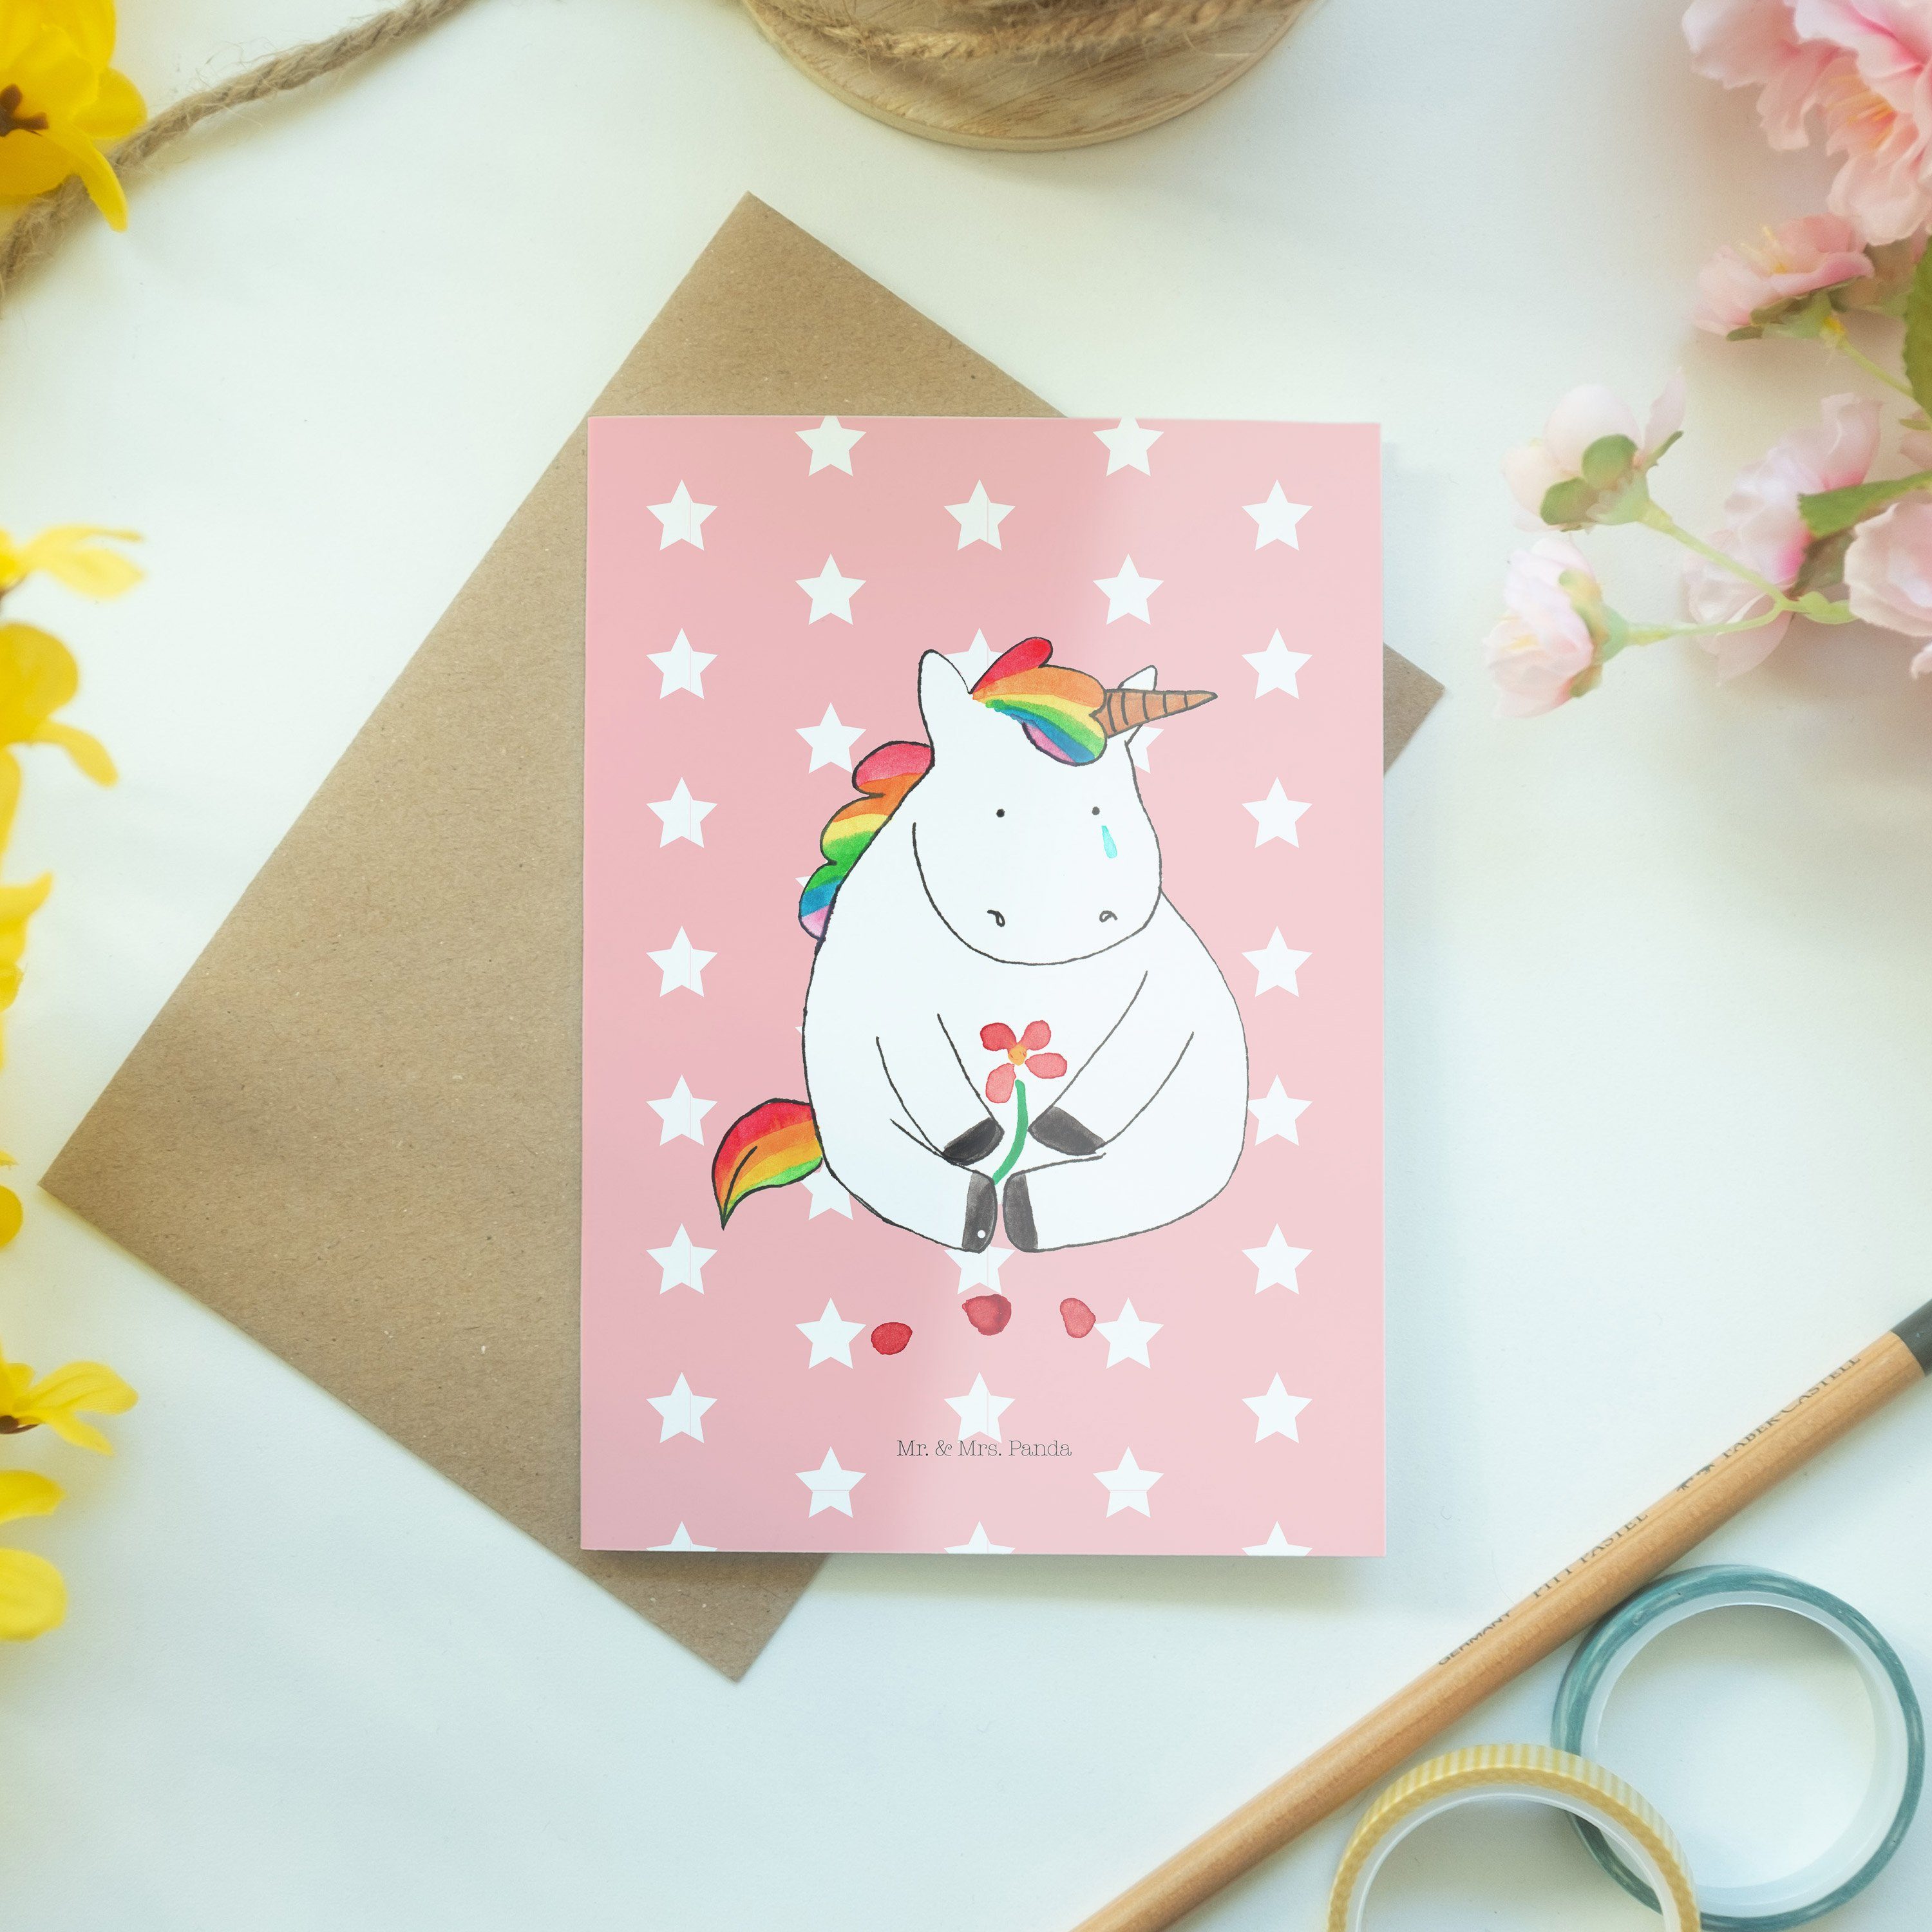 Mr. & Mrs. Panda Klap Einhorn Traurig Pastell - Grußkarte Geschenk, Karte, Hochzeitskarte, - Rot